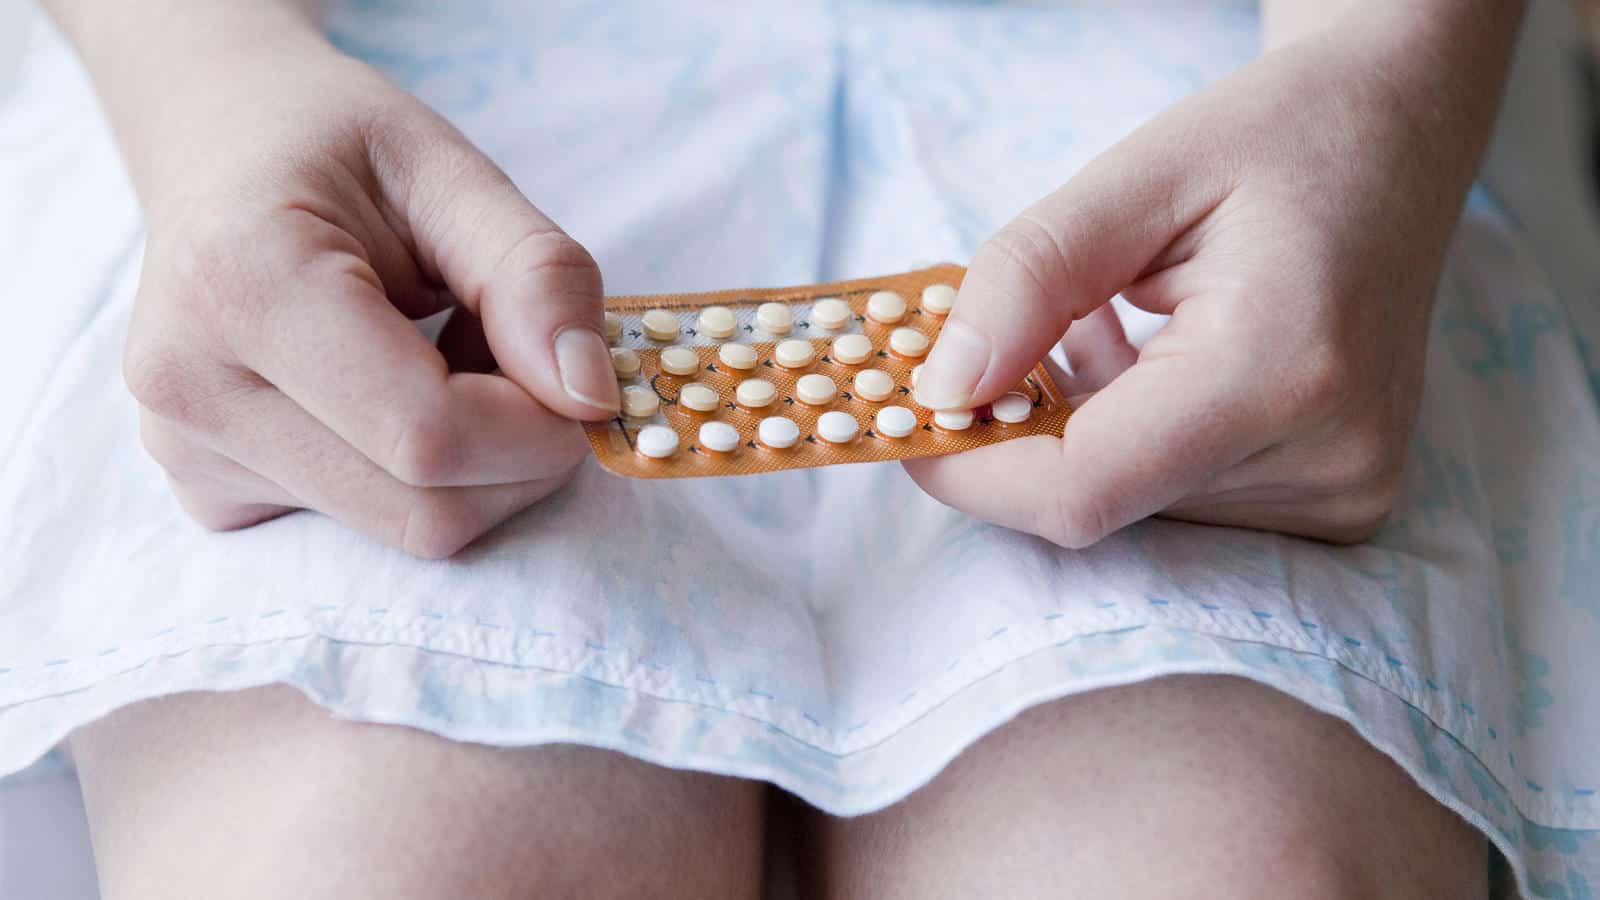 7 stvari koje se mogu dogoditi vašem tijelu ako prestanete uzimati kontracepcijske pilule